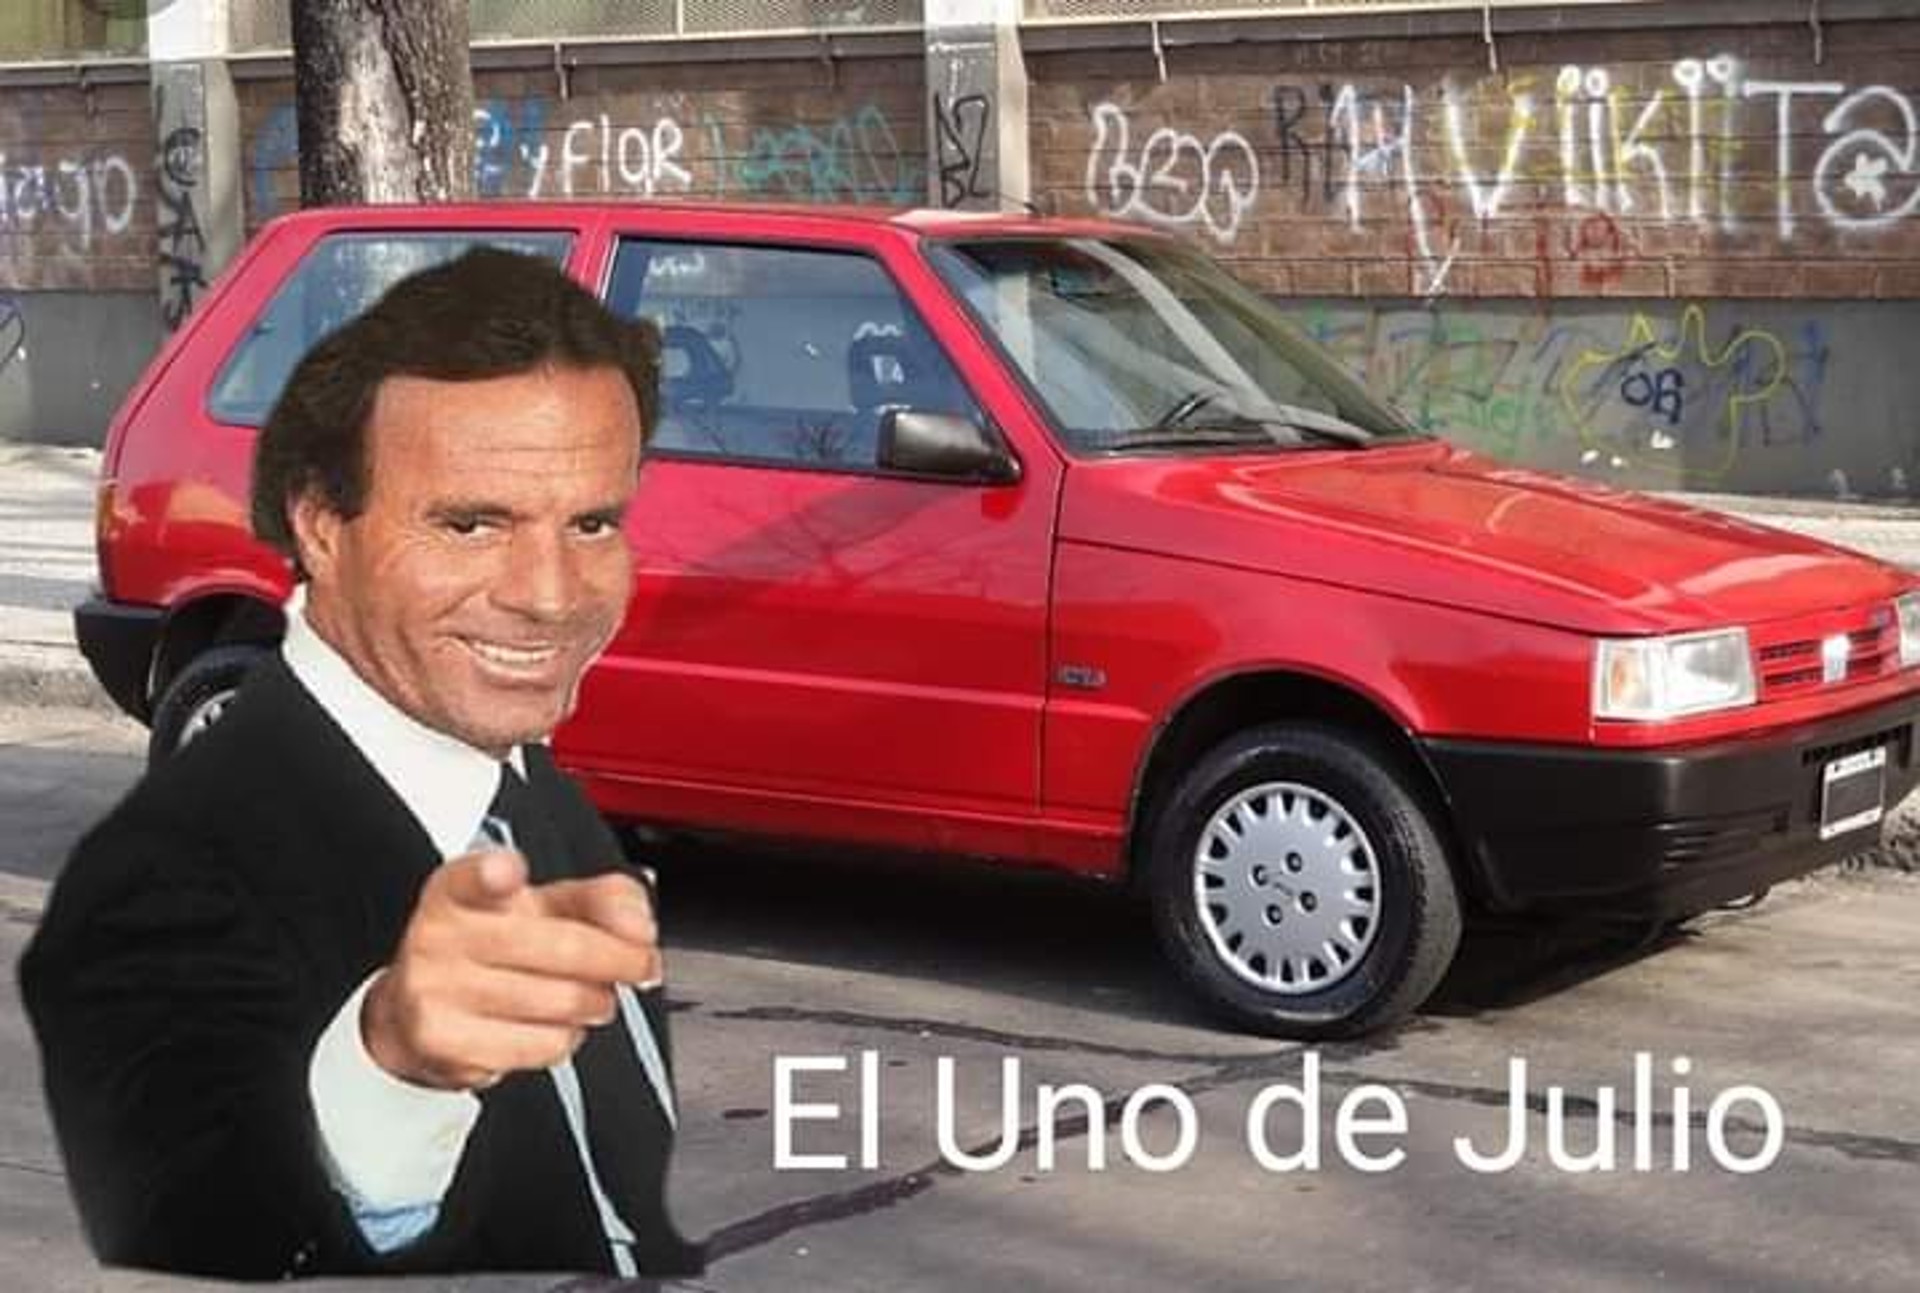 Los mejores memes de Julio Iglesias para el mes de julio